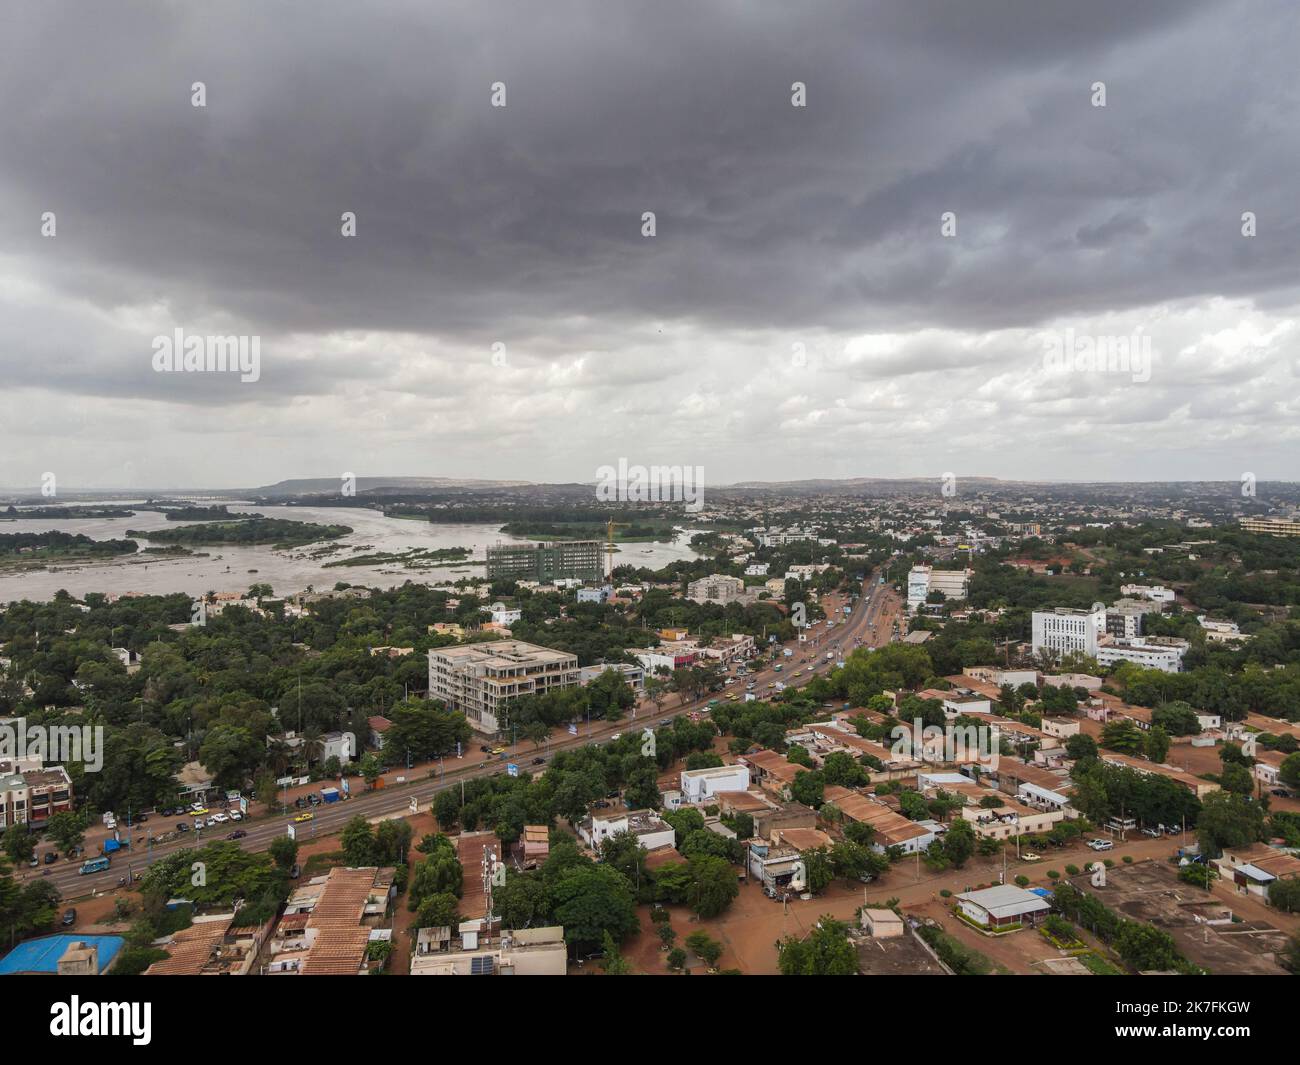 ©Nicolas Remene / le Pictorium/MAXPPP - Vue eyrienne de l'urbanization du quartier de Badalabougou a Bamako au Mali le 27 juillet 2021. Foto Stock